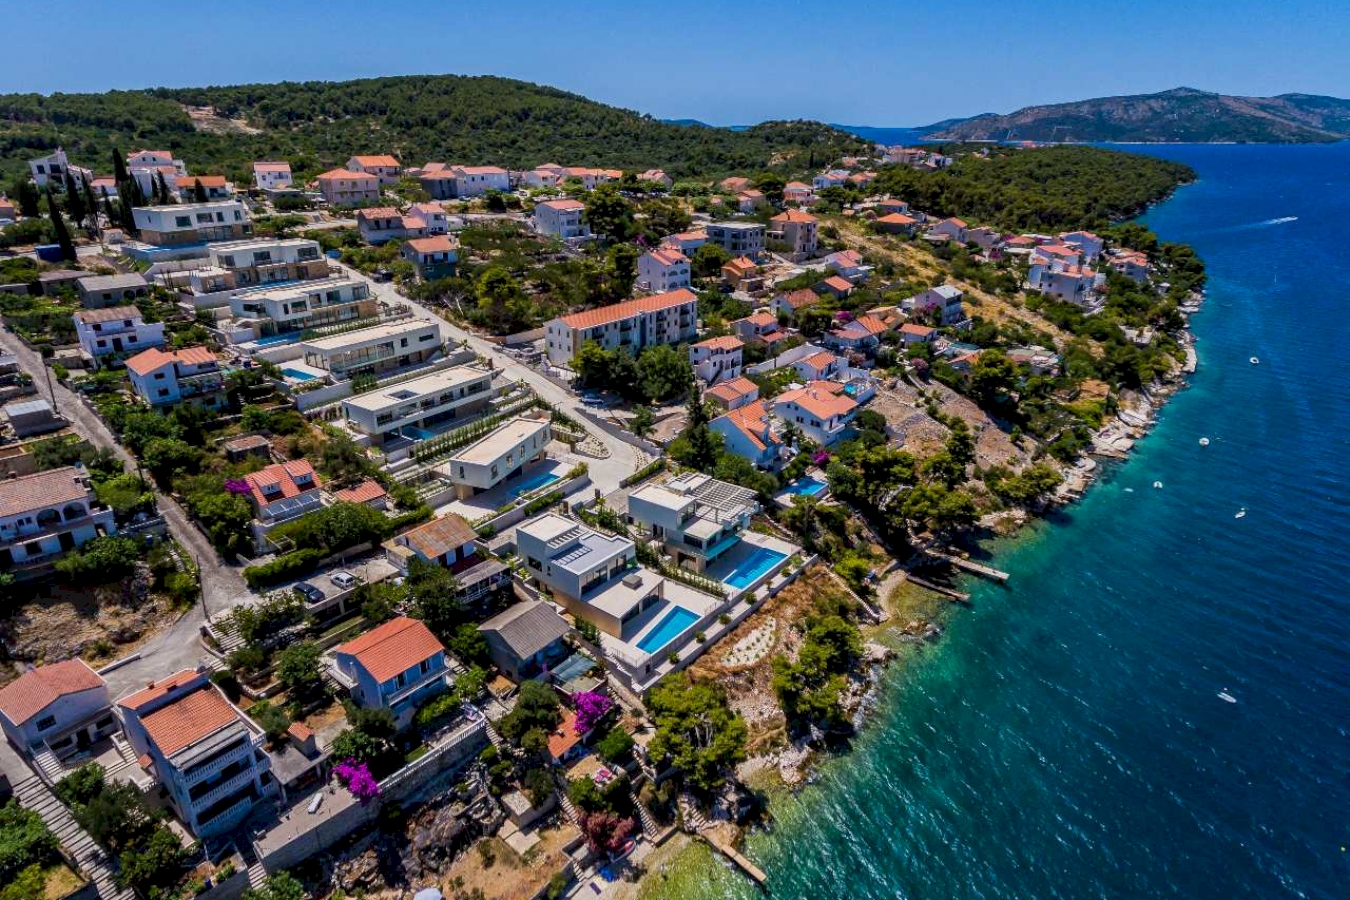 Luxury resort in Dalmatia